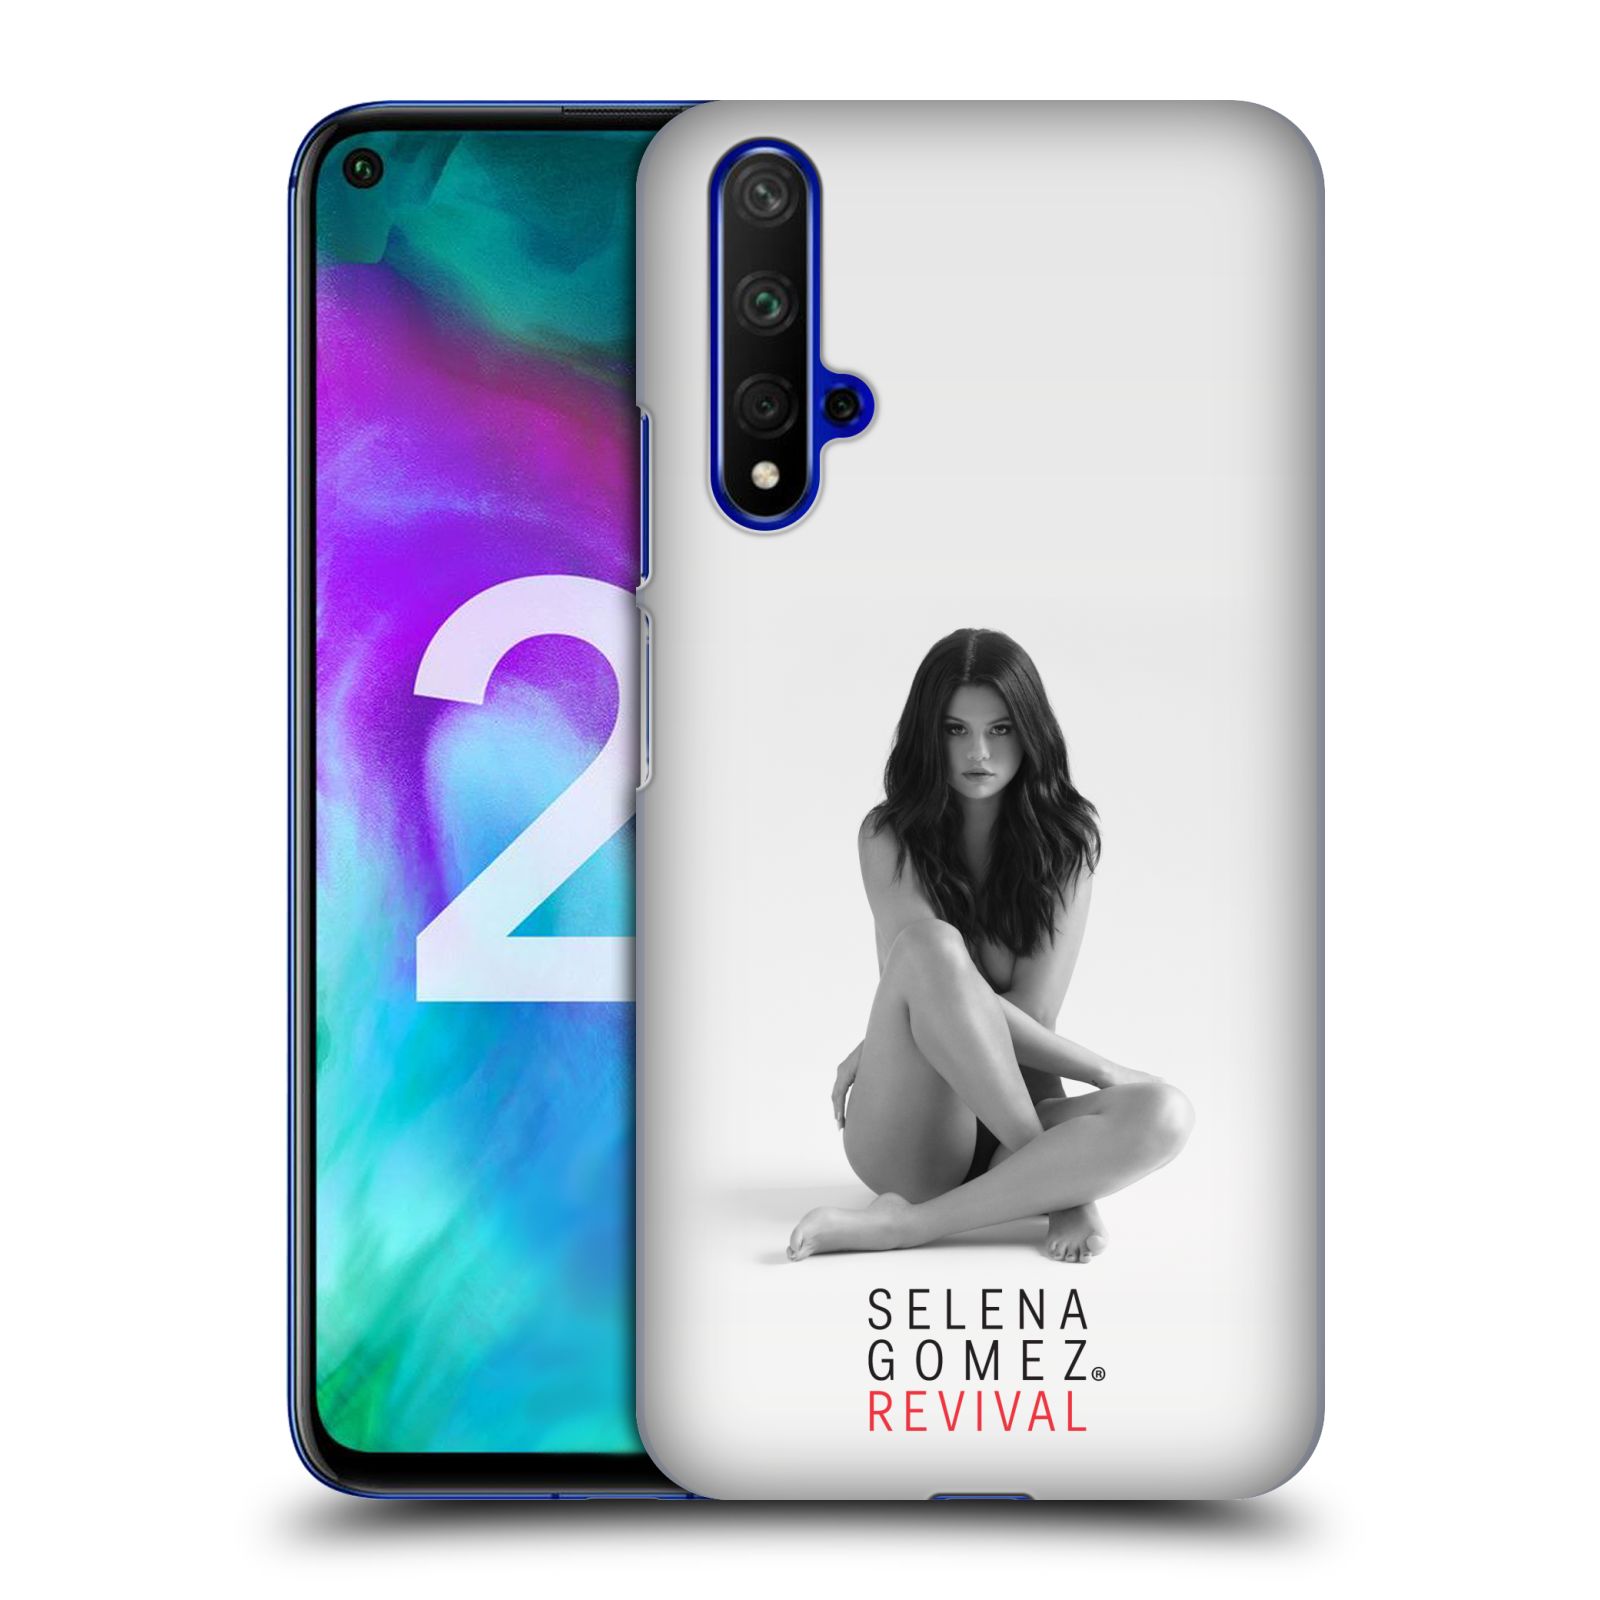 Pouzdro na mobil Honor 20 - HEAD CASE - Zpěvačka Selena Gomez foto Revival